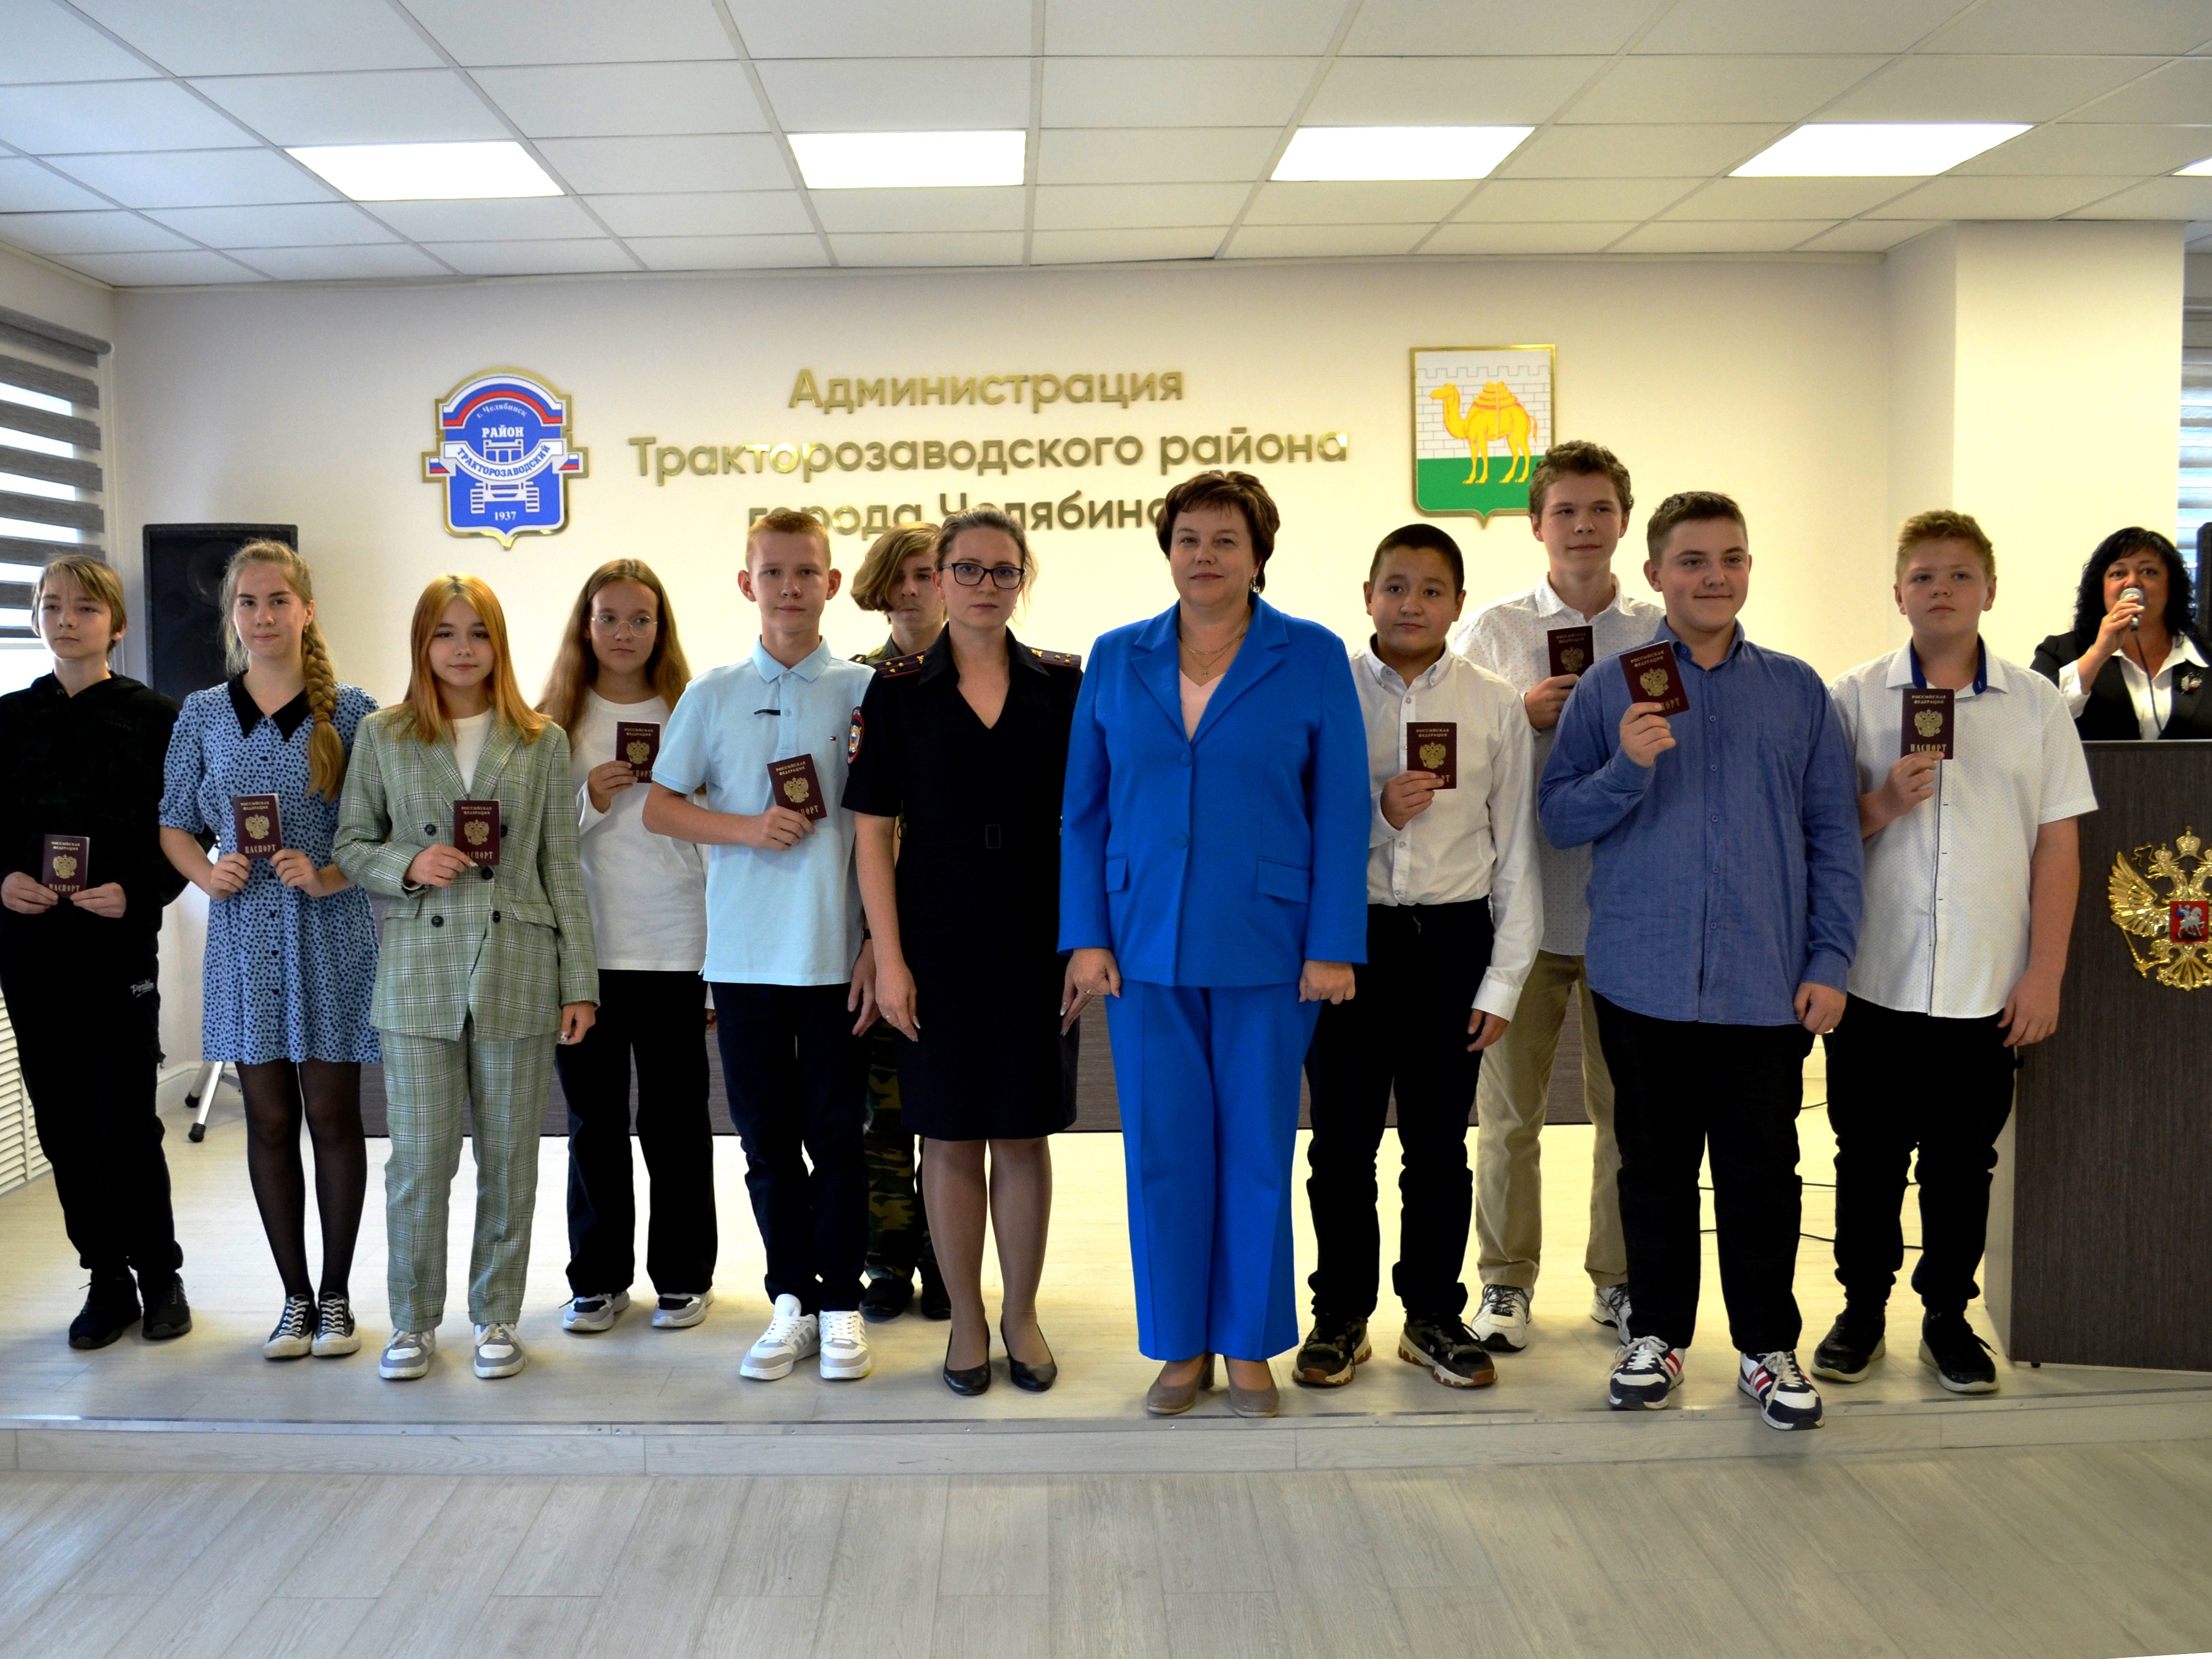 Юным жителям Тракторозаводского района вручили паспорта